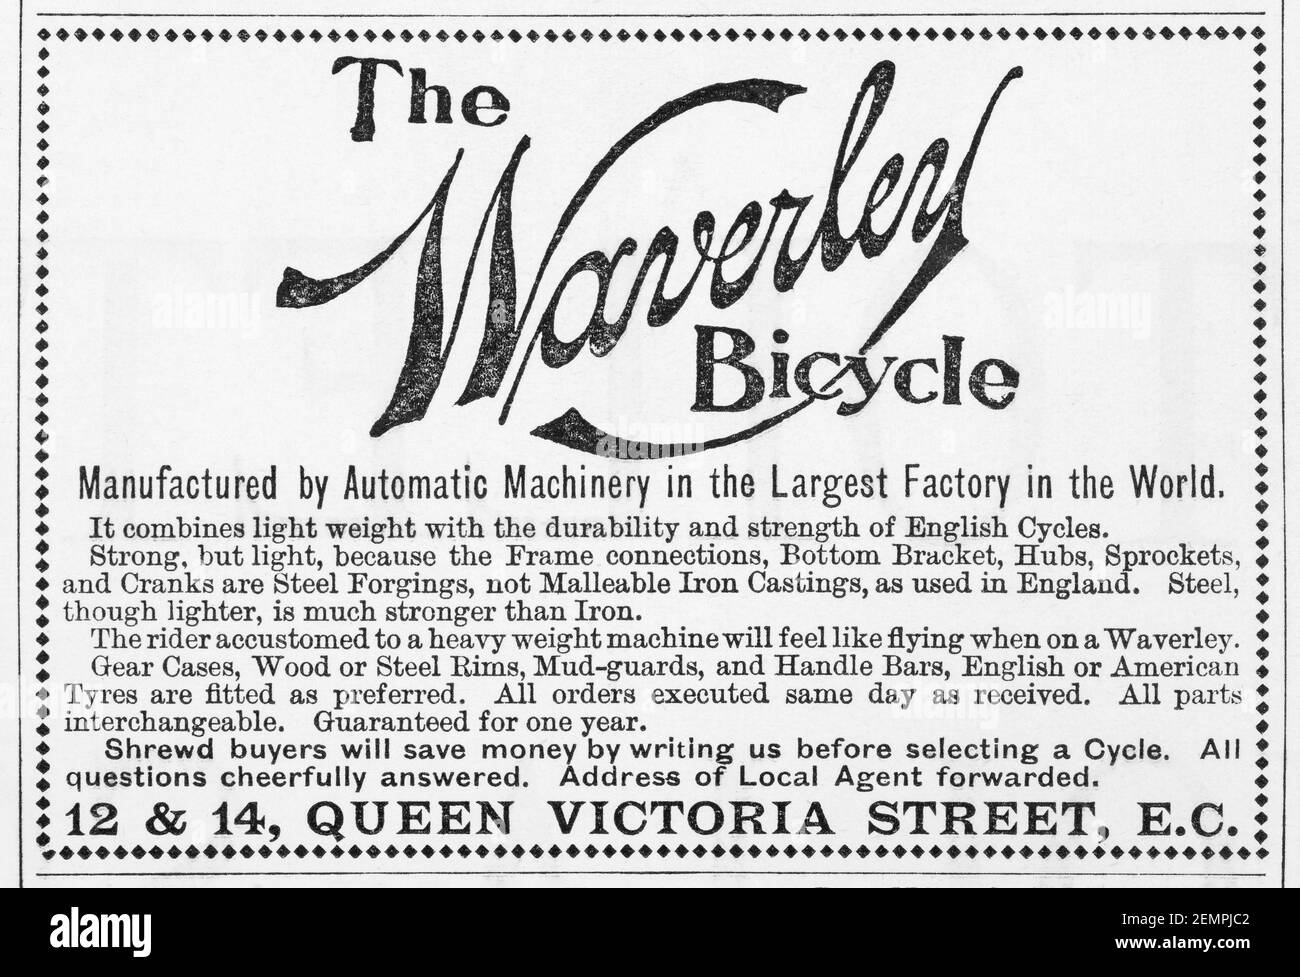 Vecchio spot ciclistico Waverley dal 1897 - prima dell'alba degli standard pubblicitari. Storia della pubblicità, vecchi annunci pubblicitari, storia della pubblicità Foto Stock